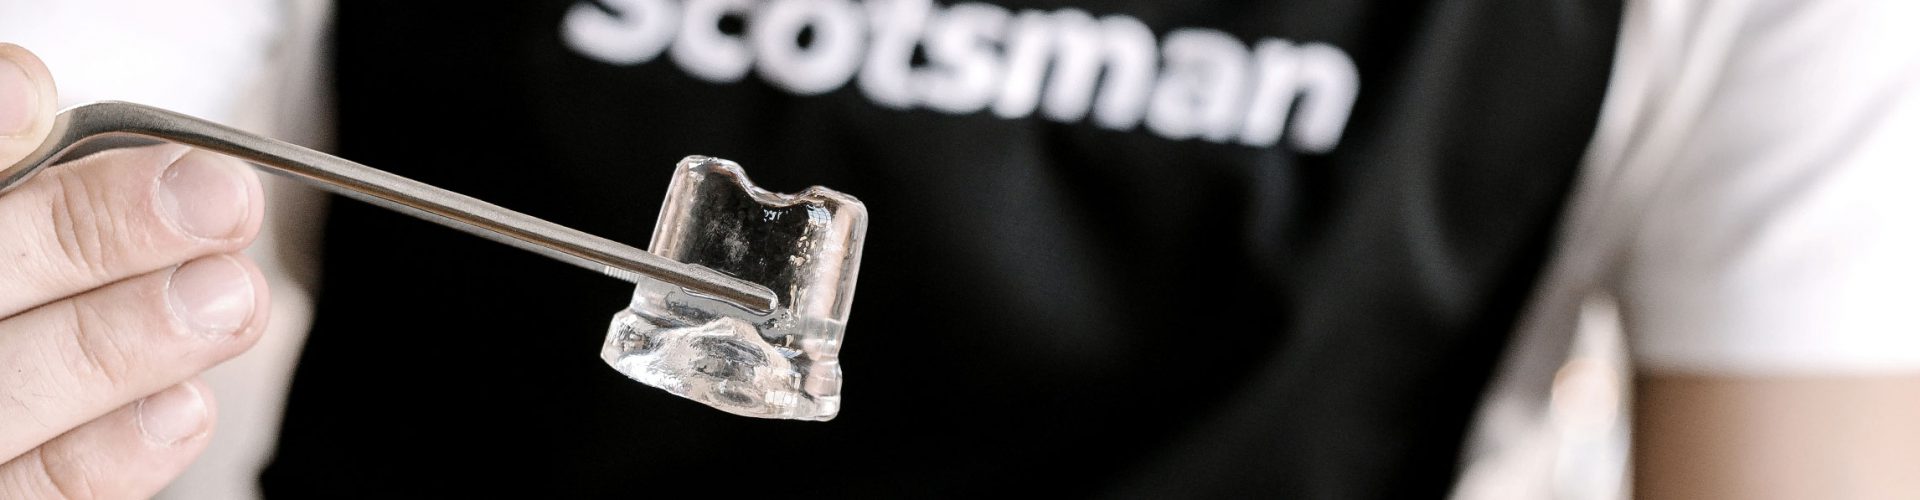 Scotsman ismaskiner är något vi på Steeltech Alingsås har stor utbud och kunskap om